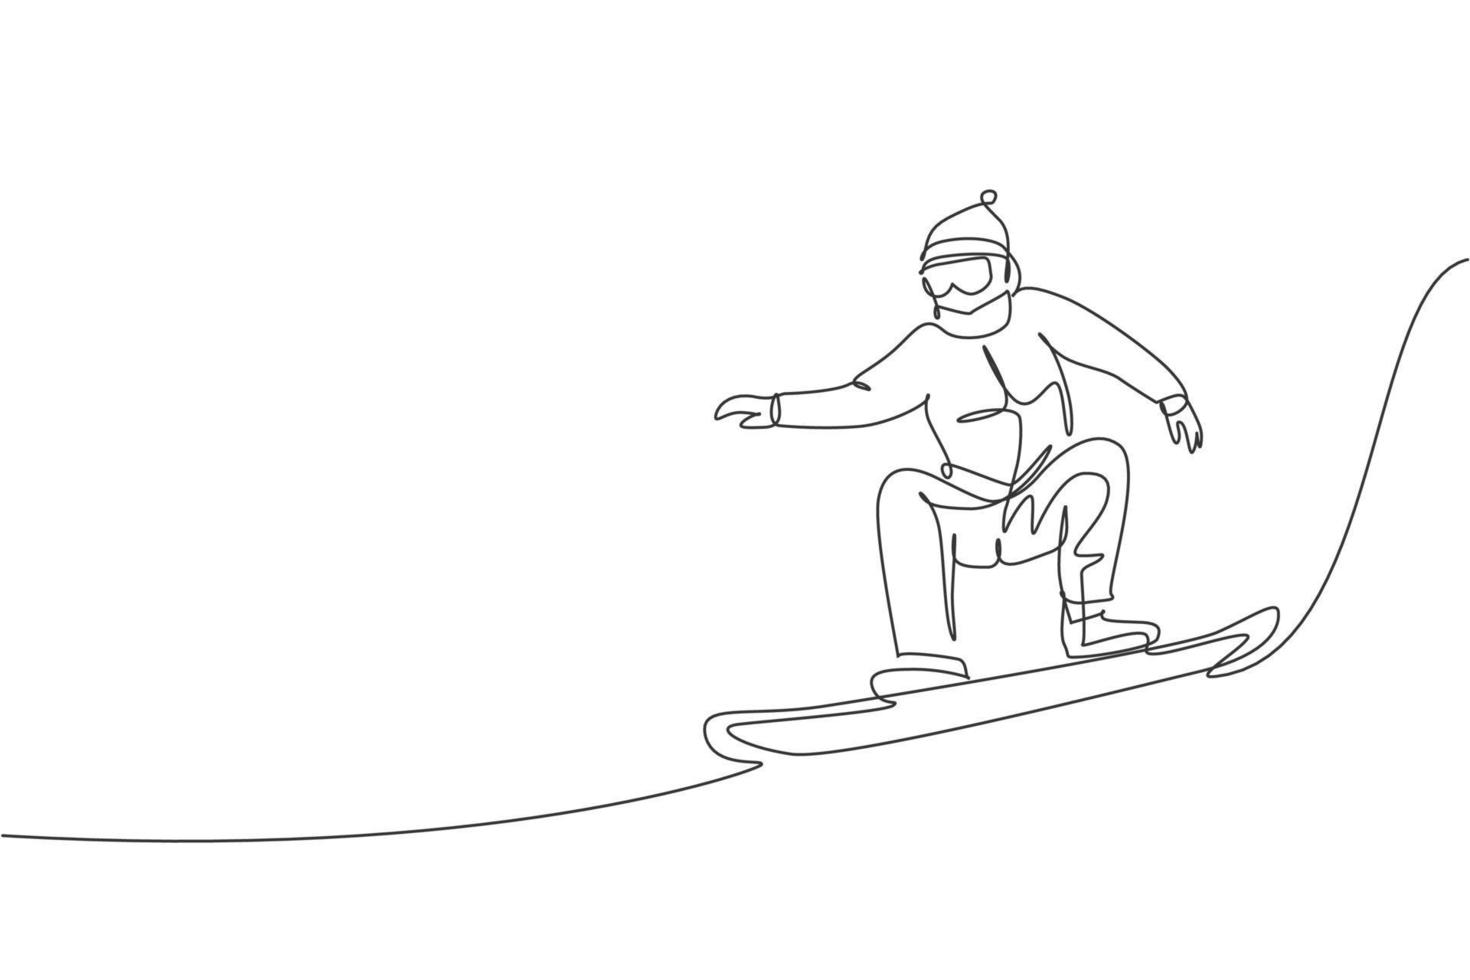 único desenho de linha contínua de homem jovem snowboarder esportivo pulando passeio de snowboard na montanha. esporte extremo ao ar livre. conceito de férias de inverno. ilustração em vetor desenho desenho de uma linha na moda